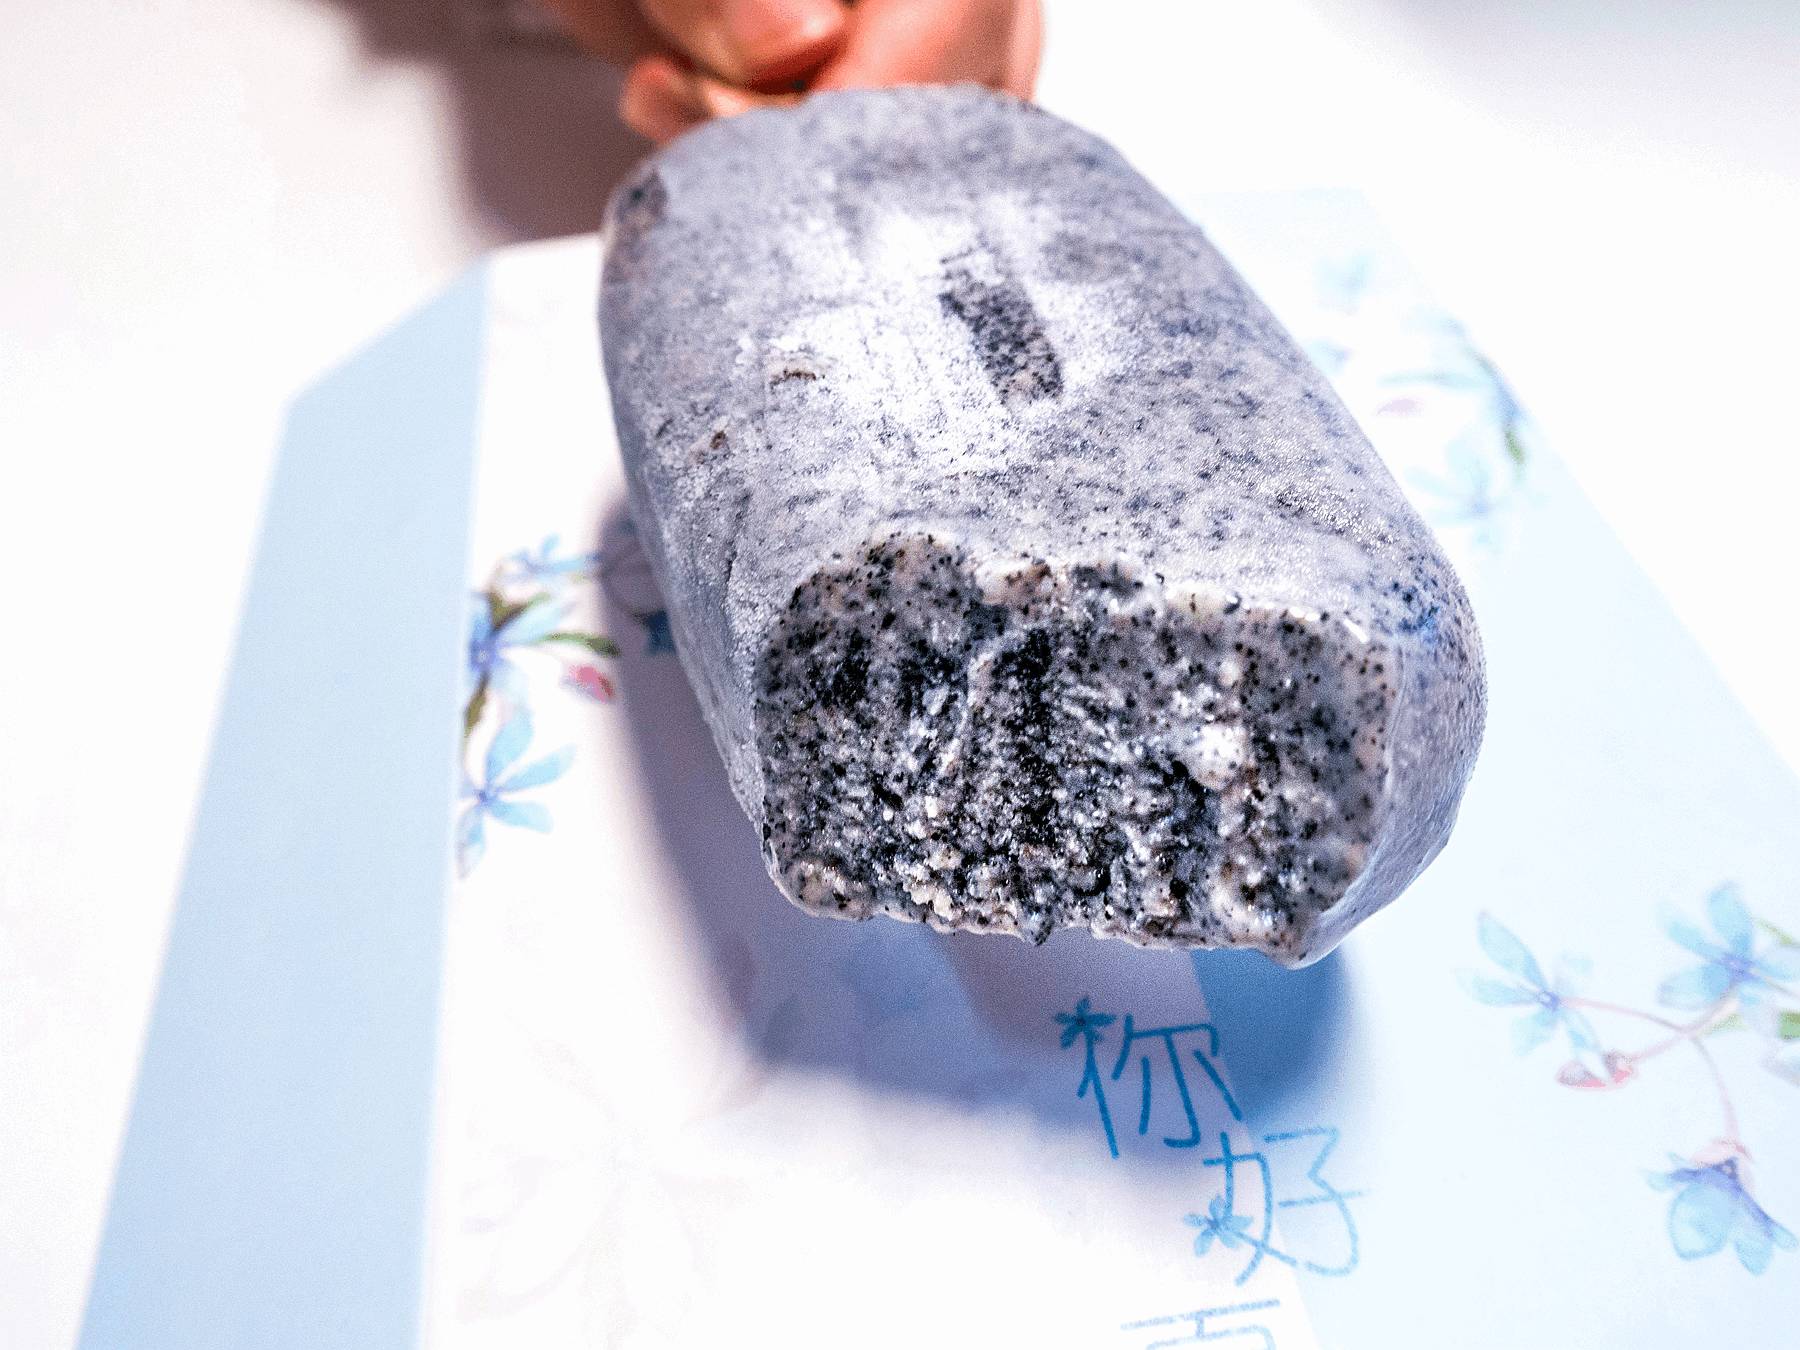 口感丝滑,加上黑芝麻的用料,一根小冰棍也可以很 健康 养生! 蓝莓雪糕